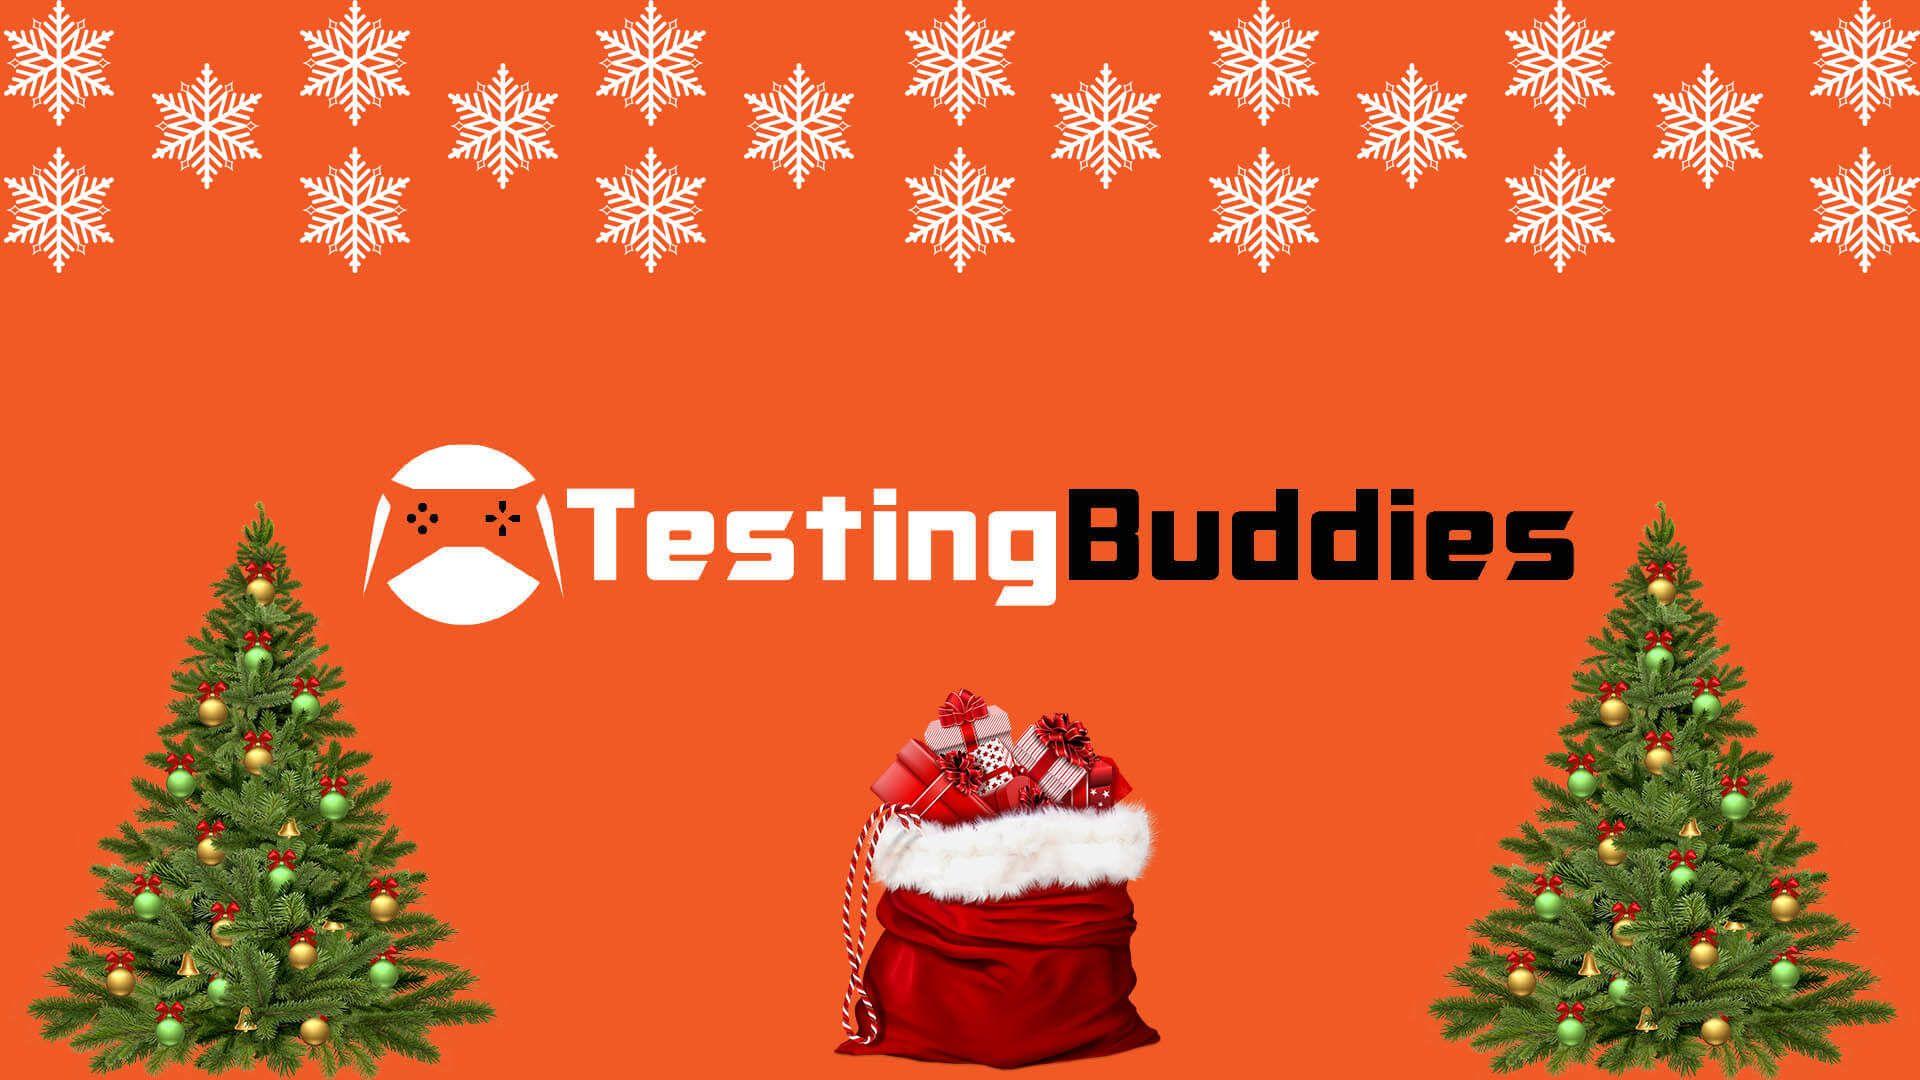 Testingbuddies Img Christmas